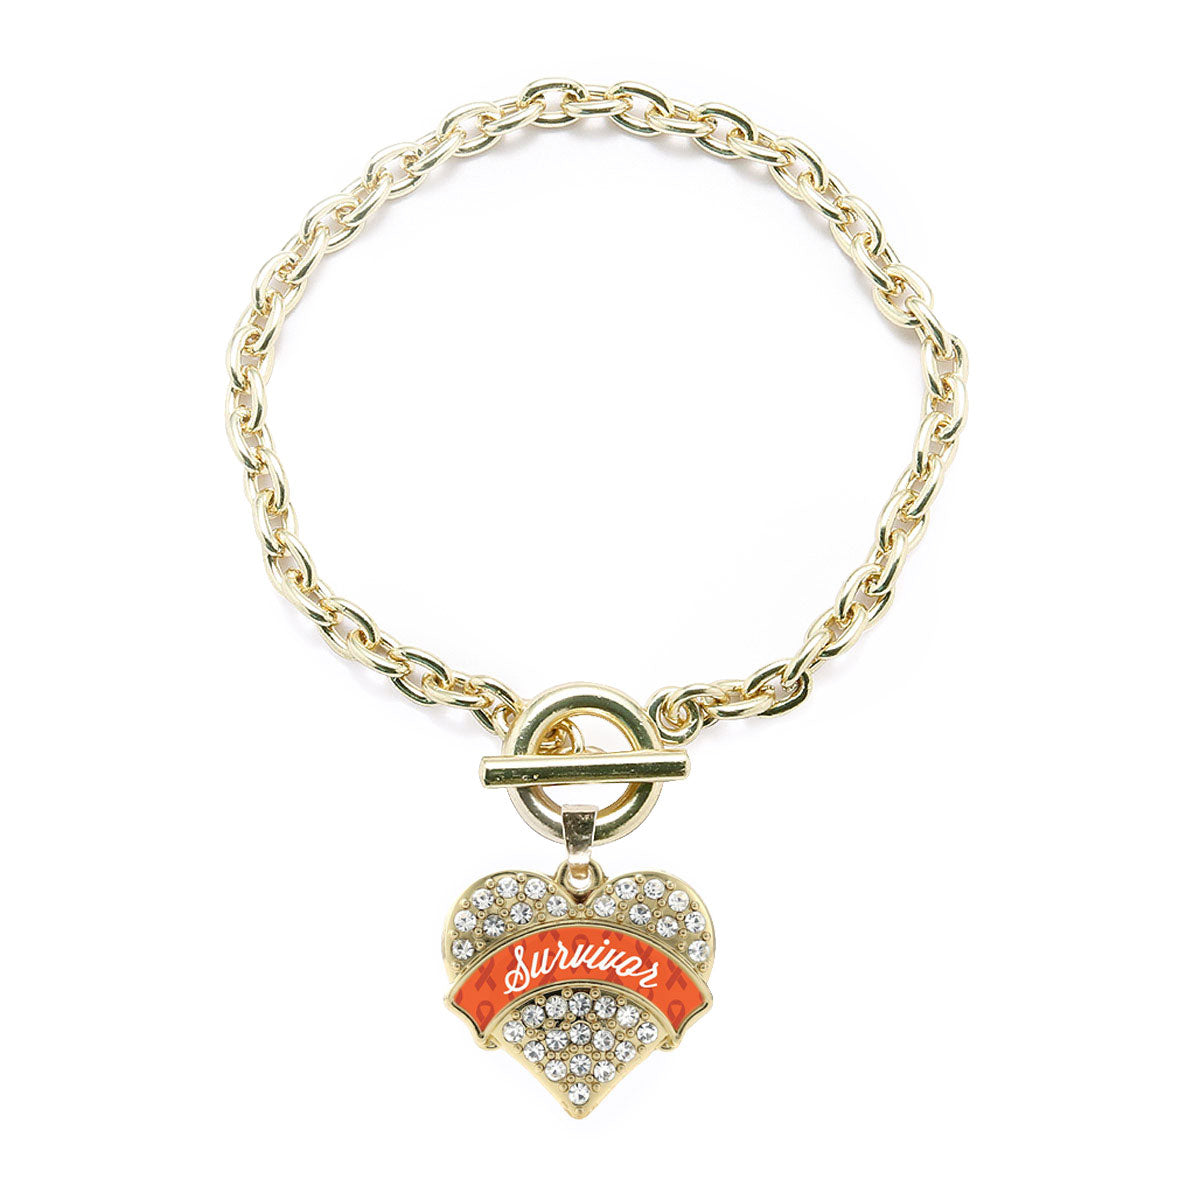 Gold Orange Survivor Pave Heart Charm Toggle Bracelet